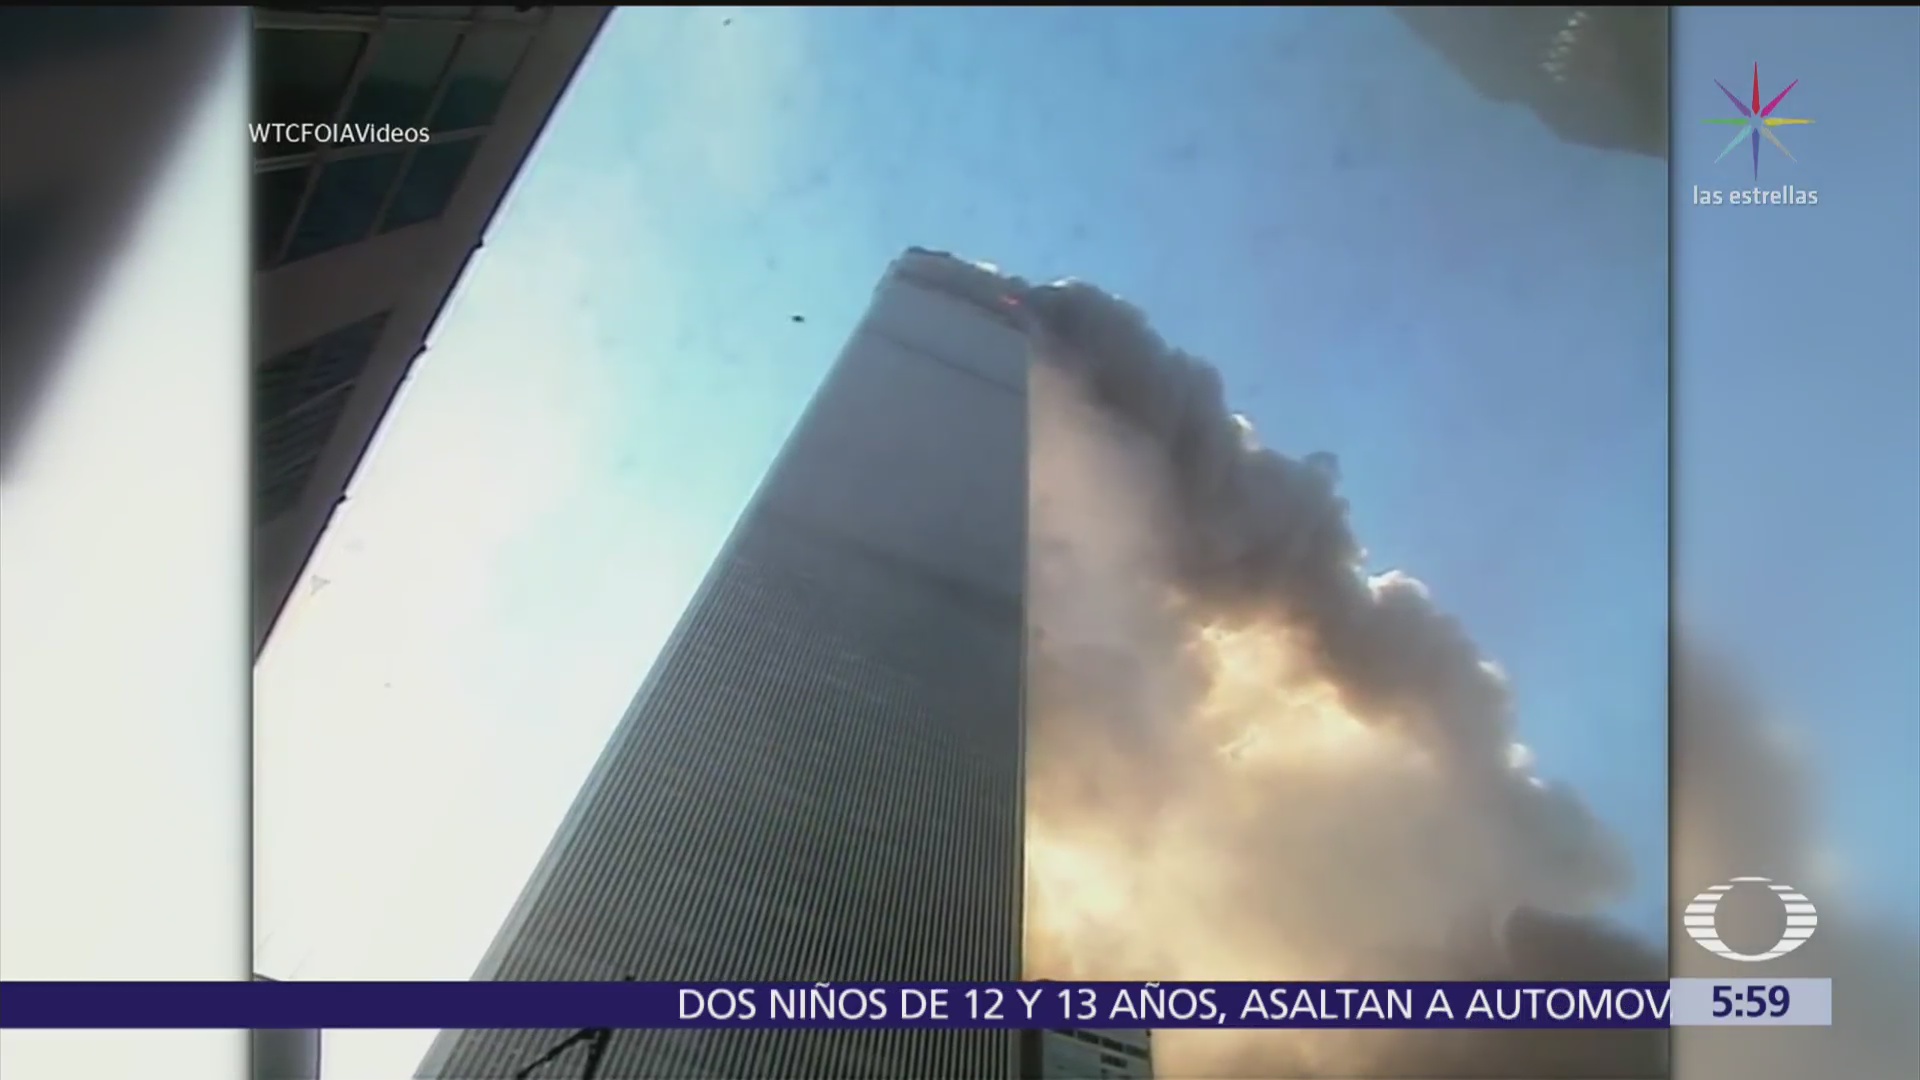 Difunden video remasterizado sobre el atentado del 11-S